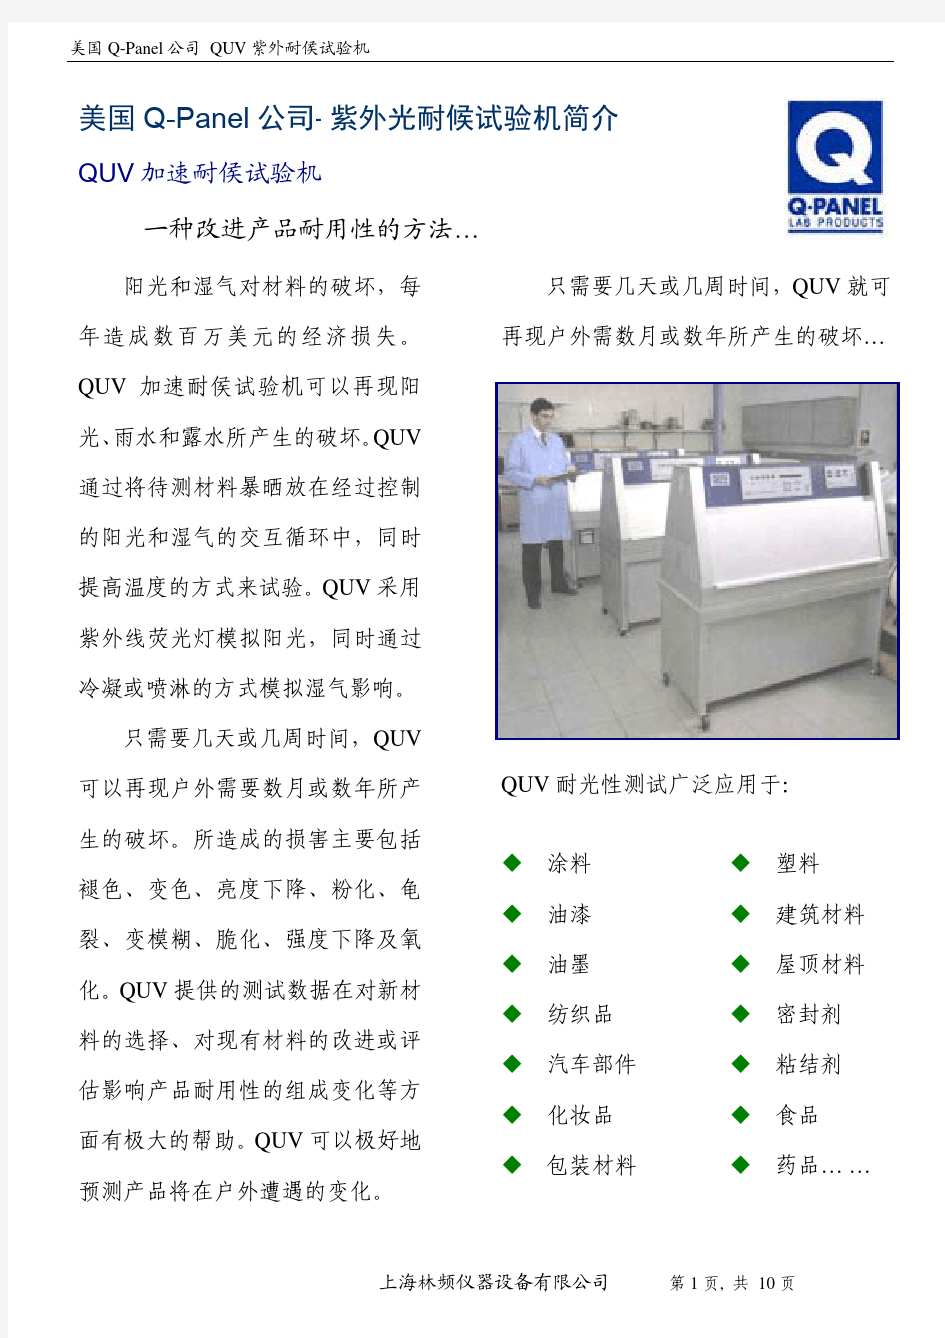 美国 Q-Panel 公司 紫外光耐候试验机简介